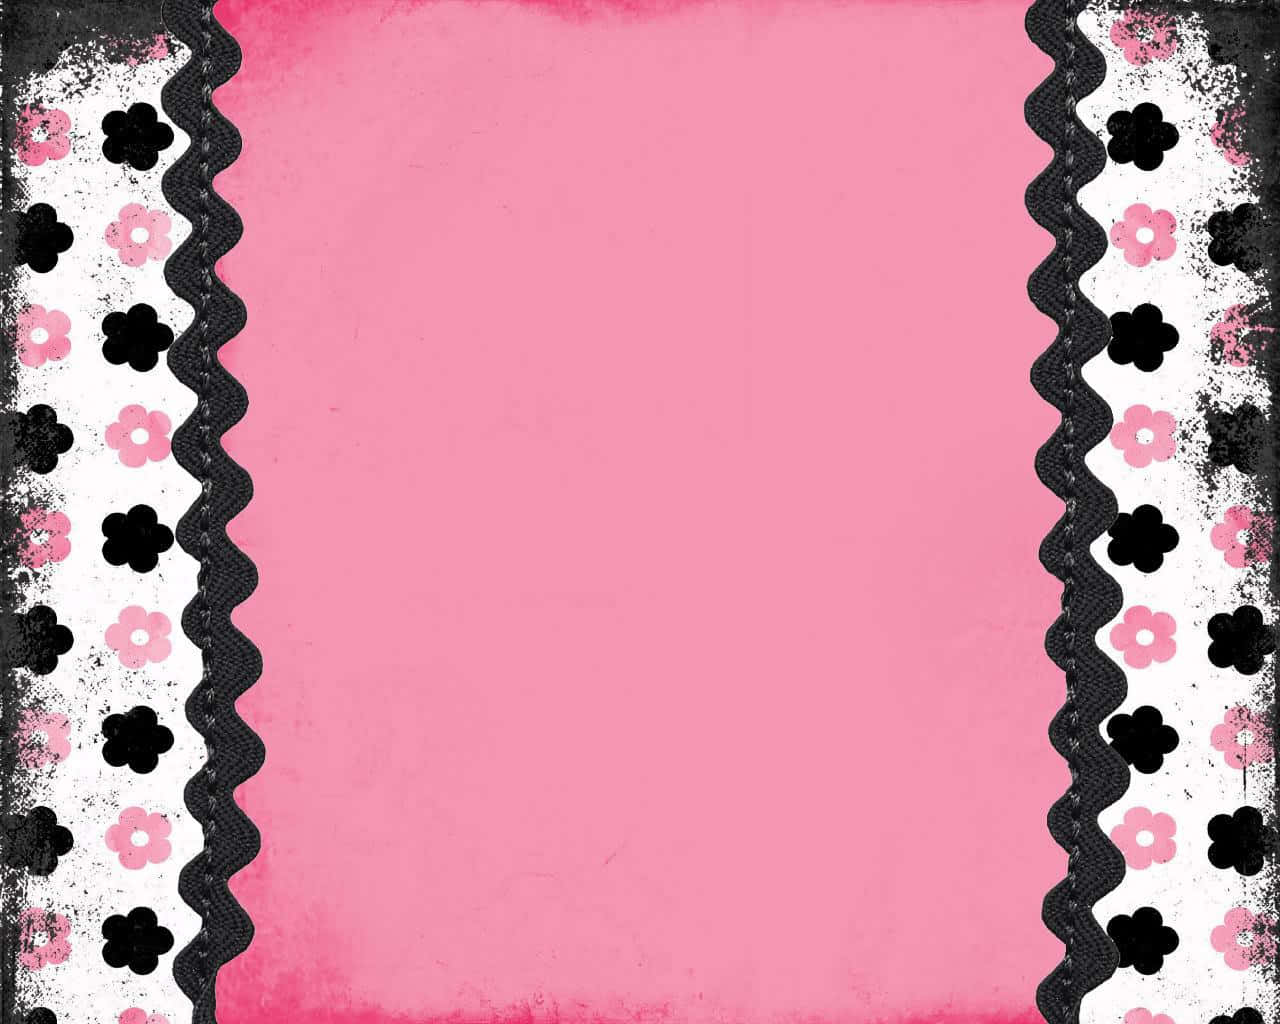 Fesselnderkontrast: Pink Und Schwarz